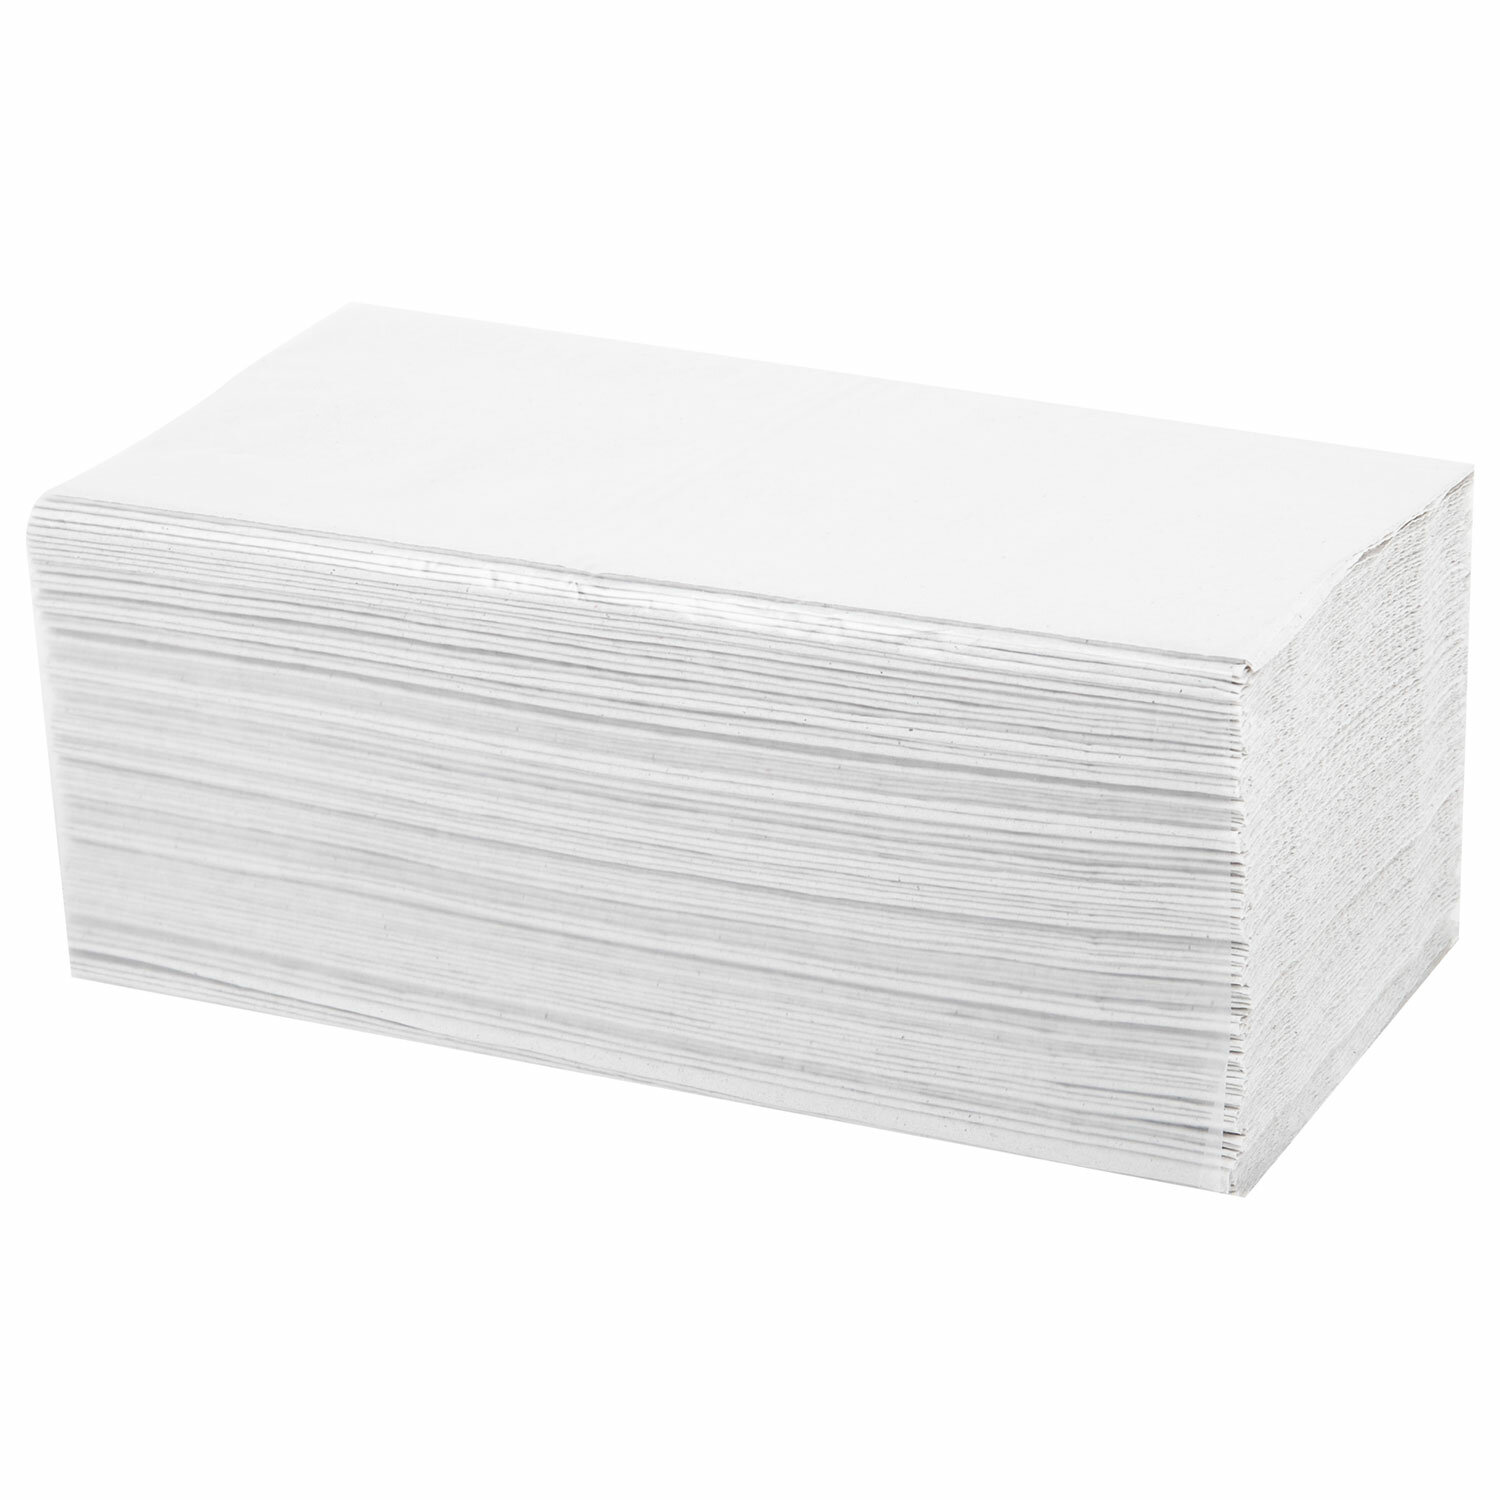 Полотенца бумажные 250 шт., VITA ЭКОНОМ (H3) 1-слой, серые, 22х23 см, V-сложение,